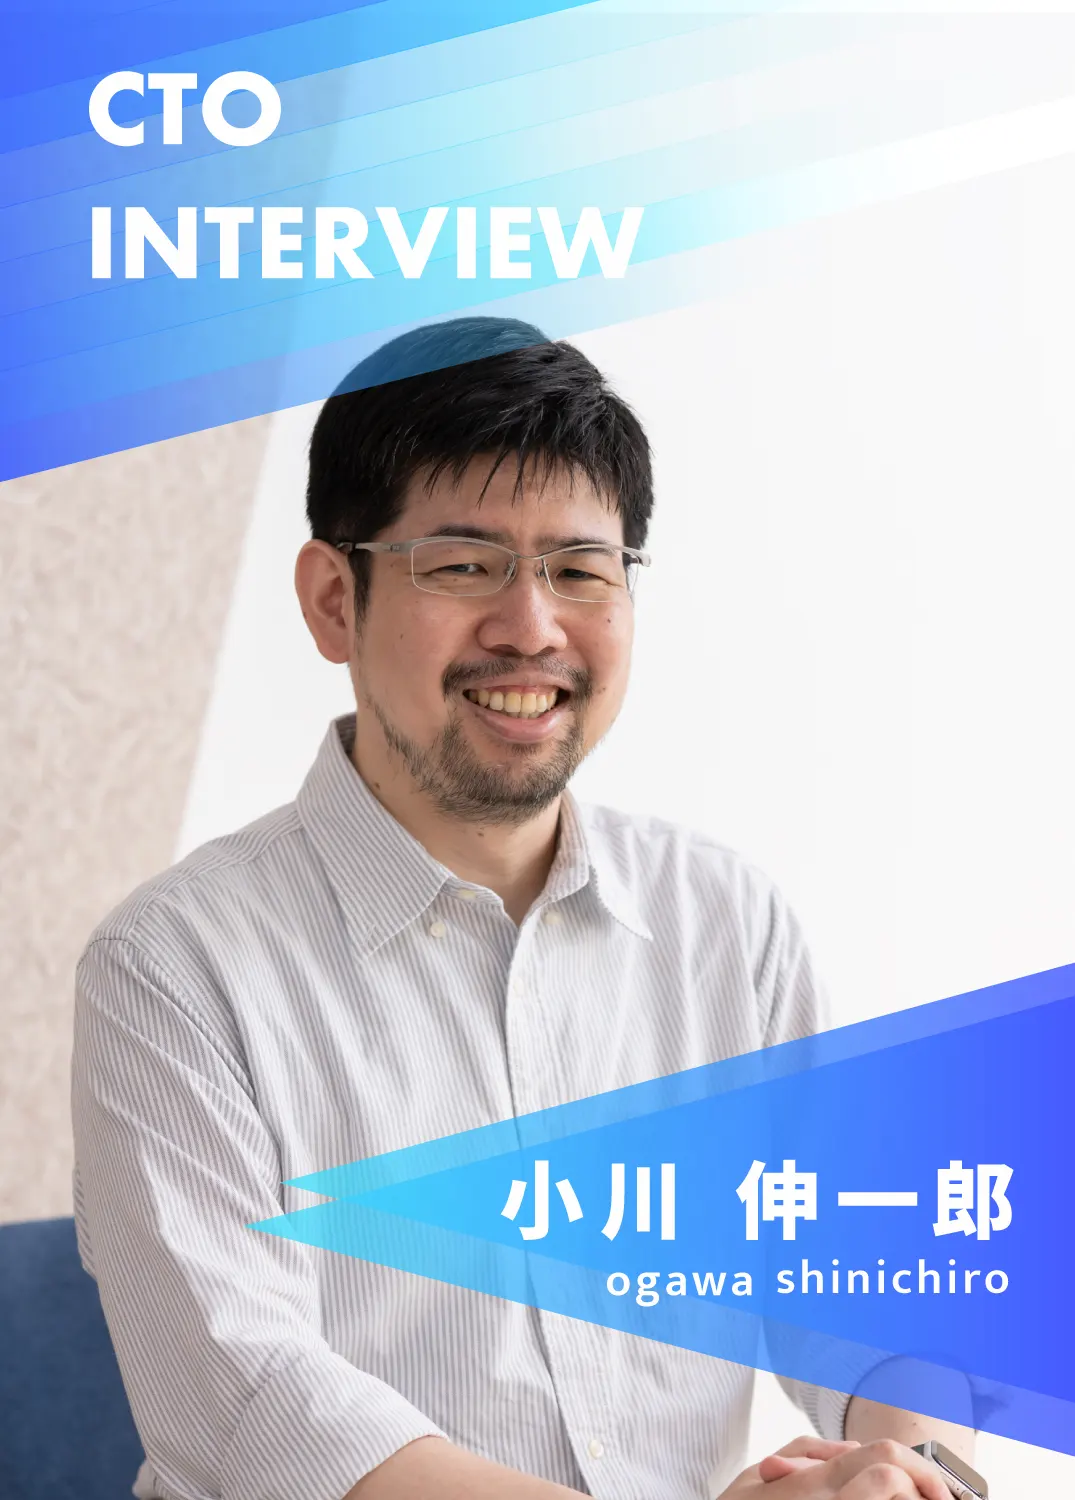 もっと個人がキャリアを選びやすい未来をつくる。CTO小川インタビュー